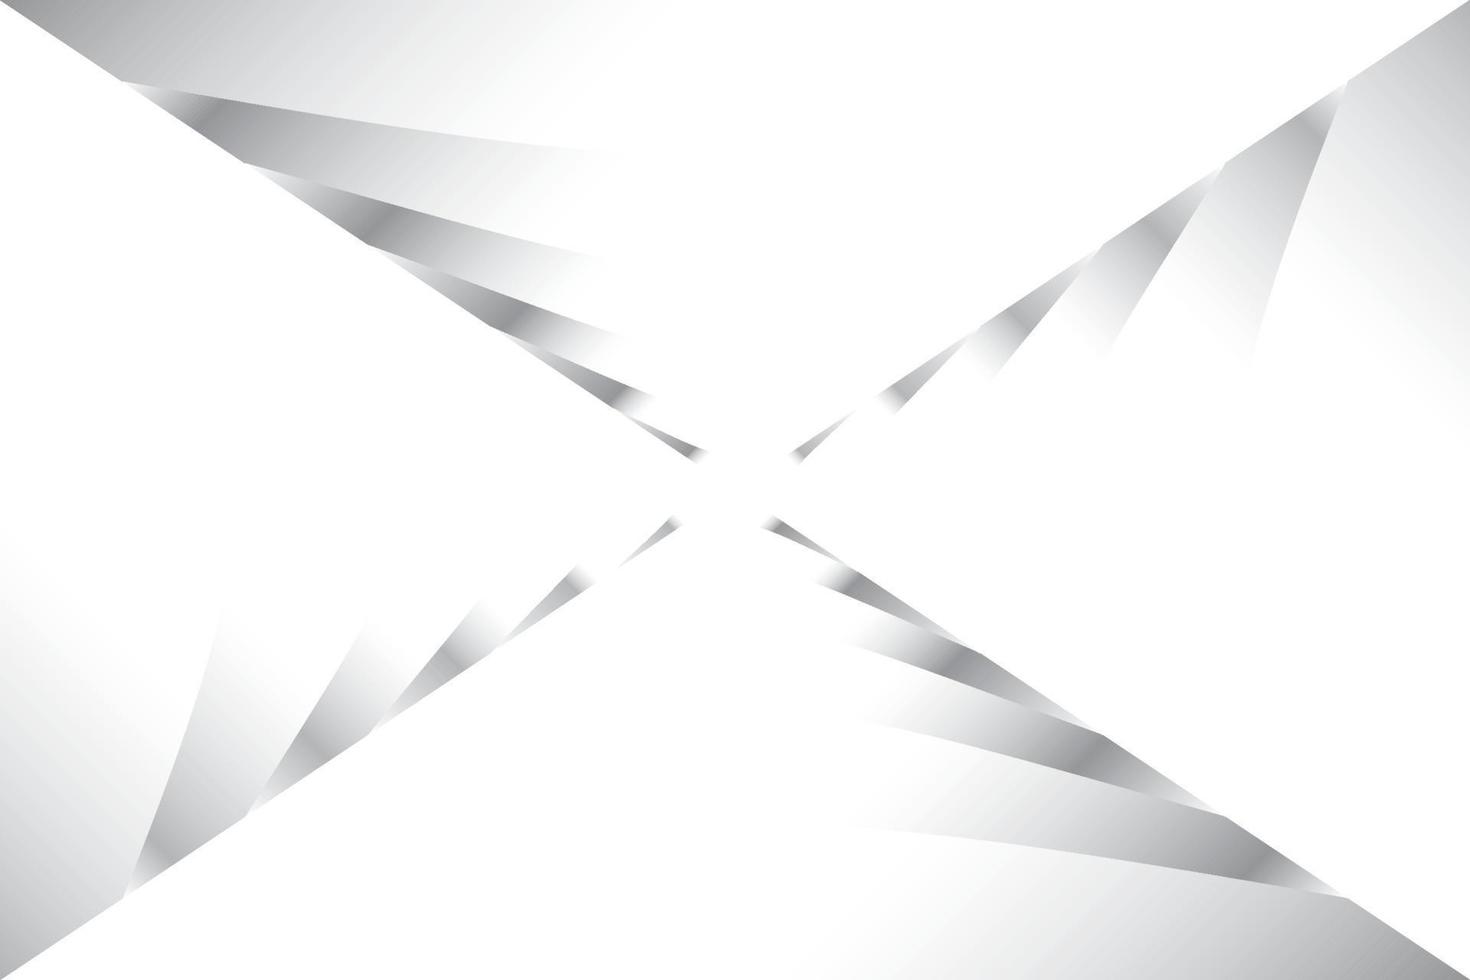 fondo geométrico abstracto de color blanco y gris. ilustración vectorial vector